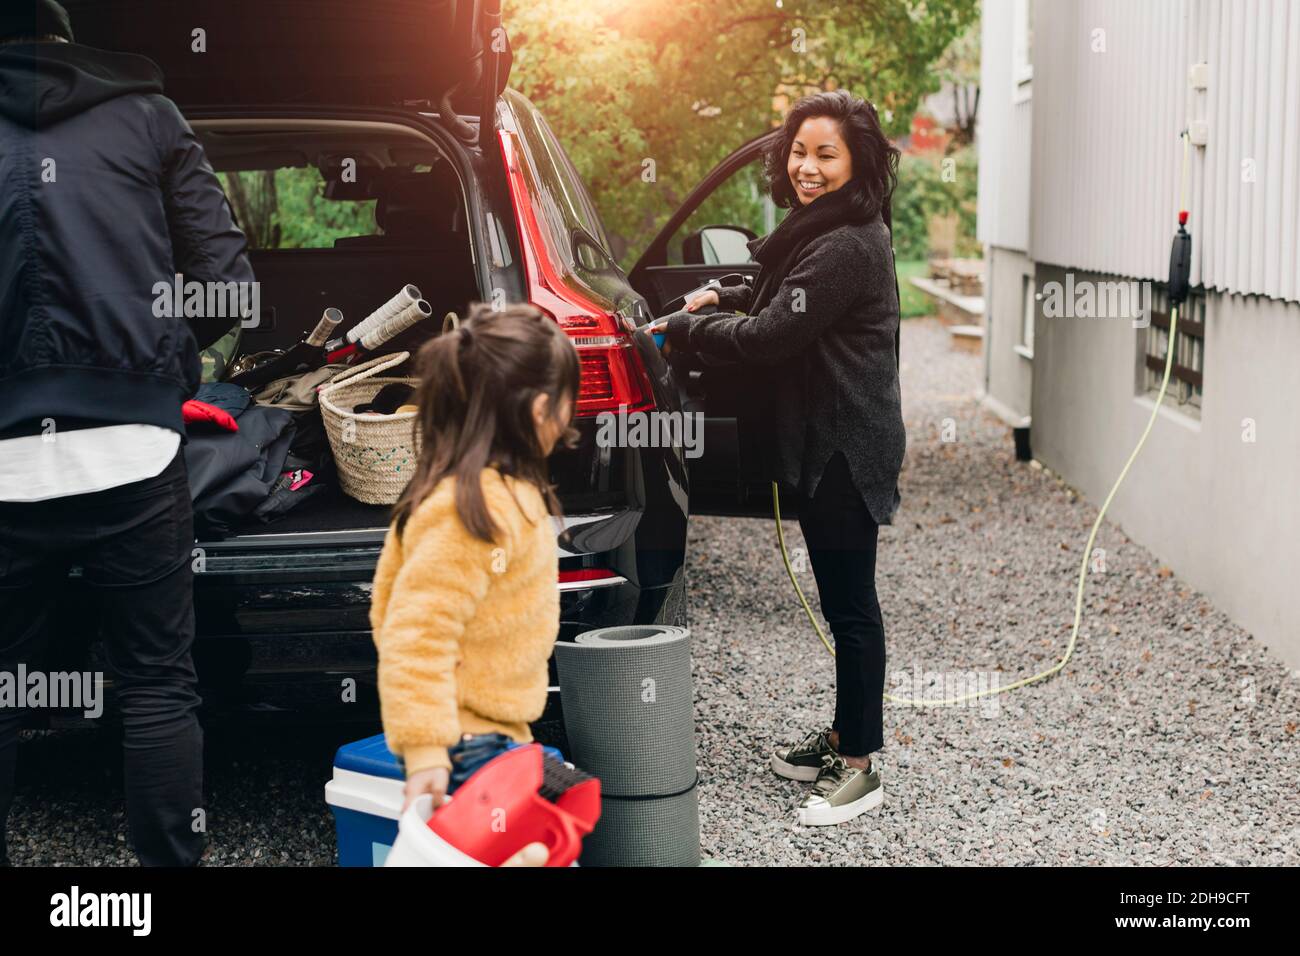 Mujer sonriente cobrando el coche mientras la familia cargaba el equipaje en el maletero Foto de stock